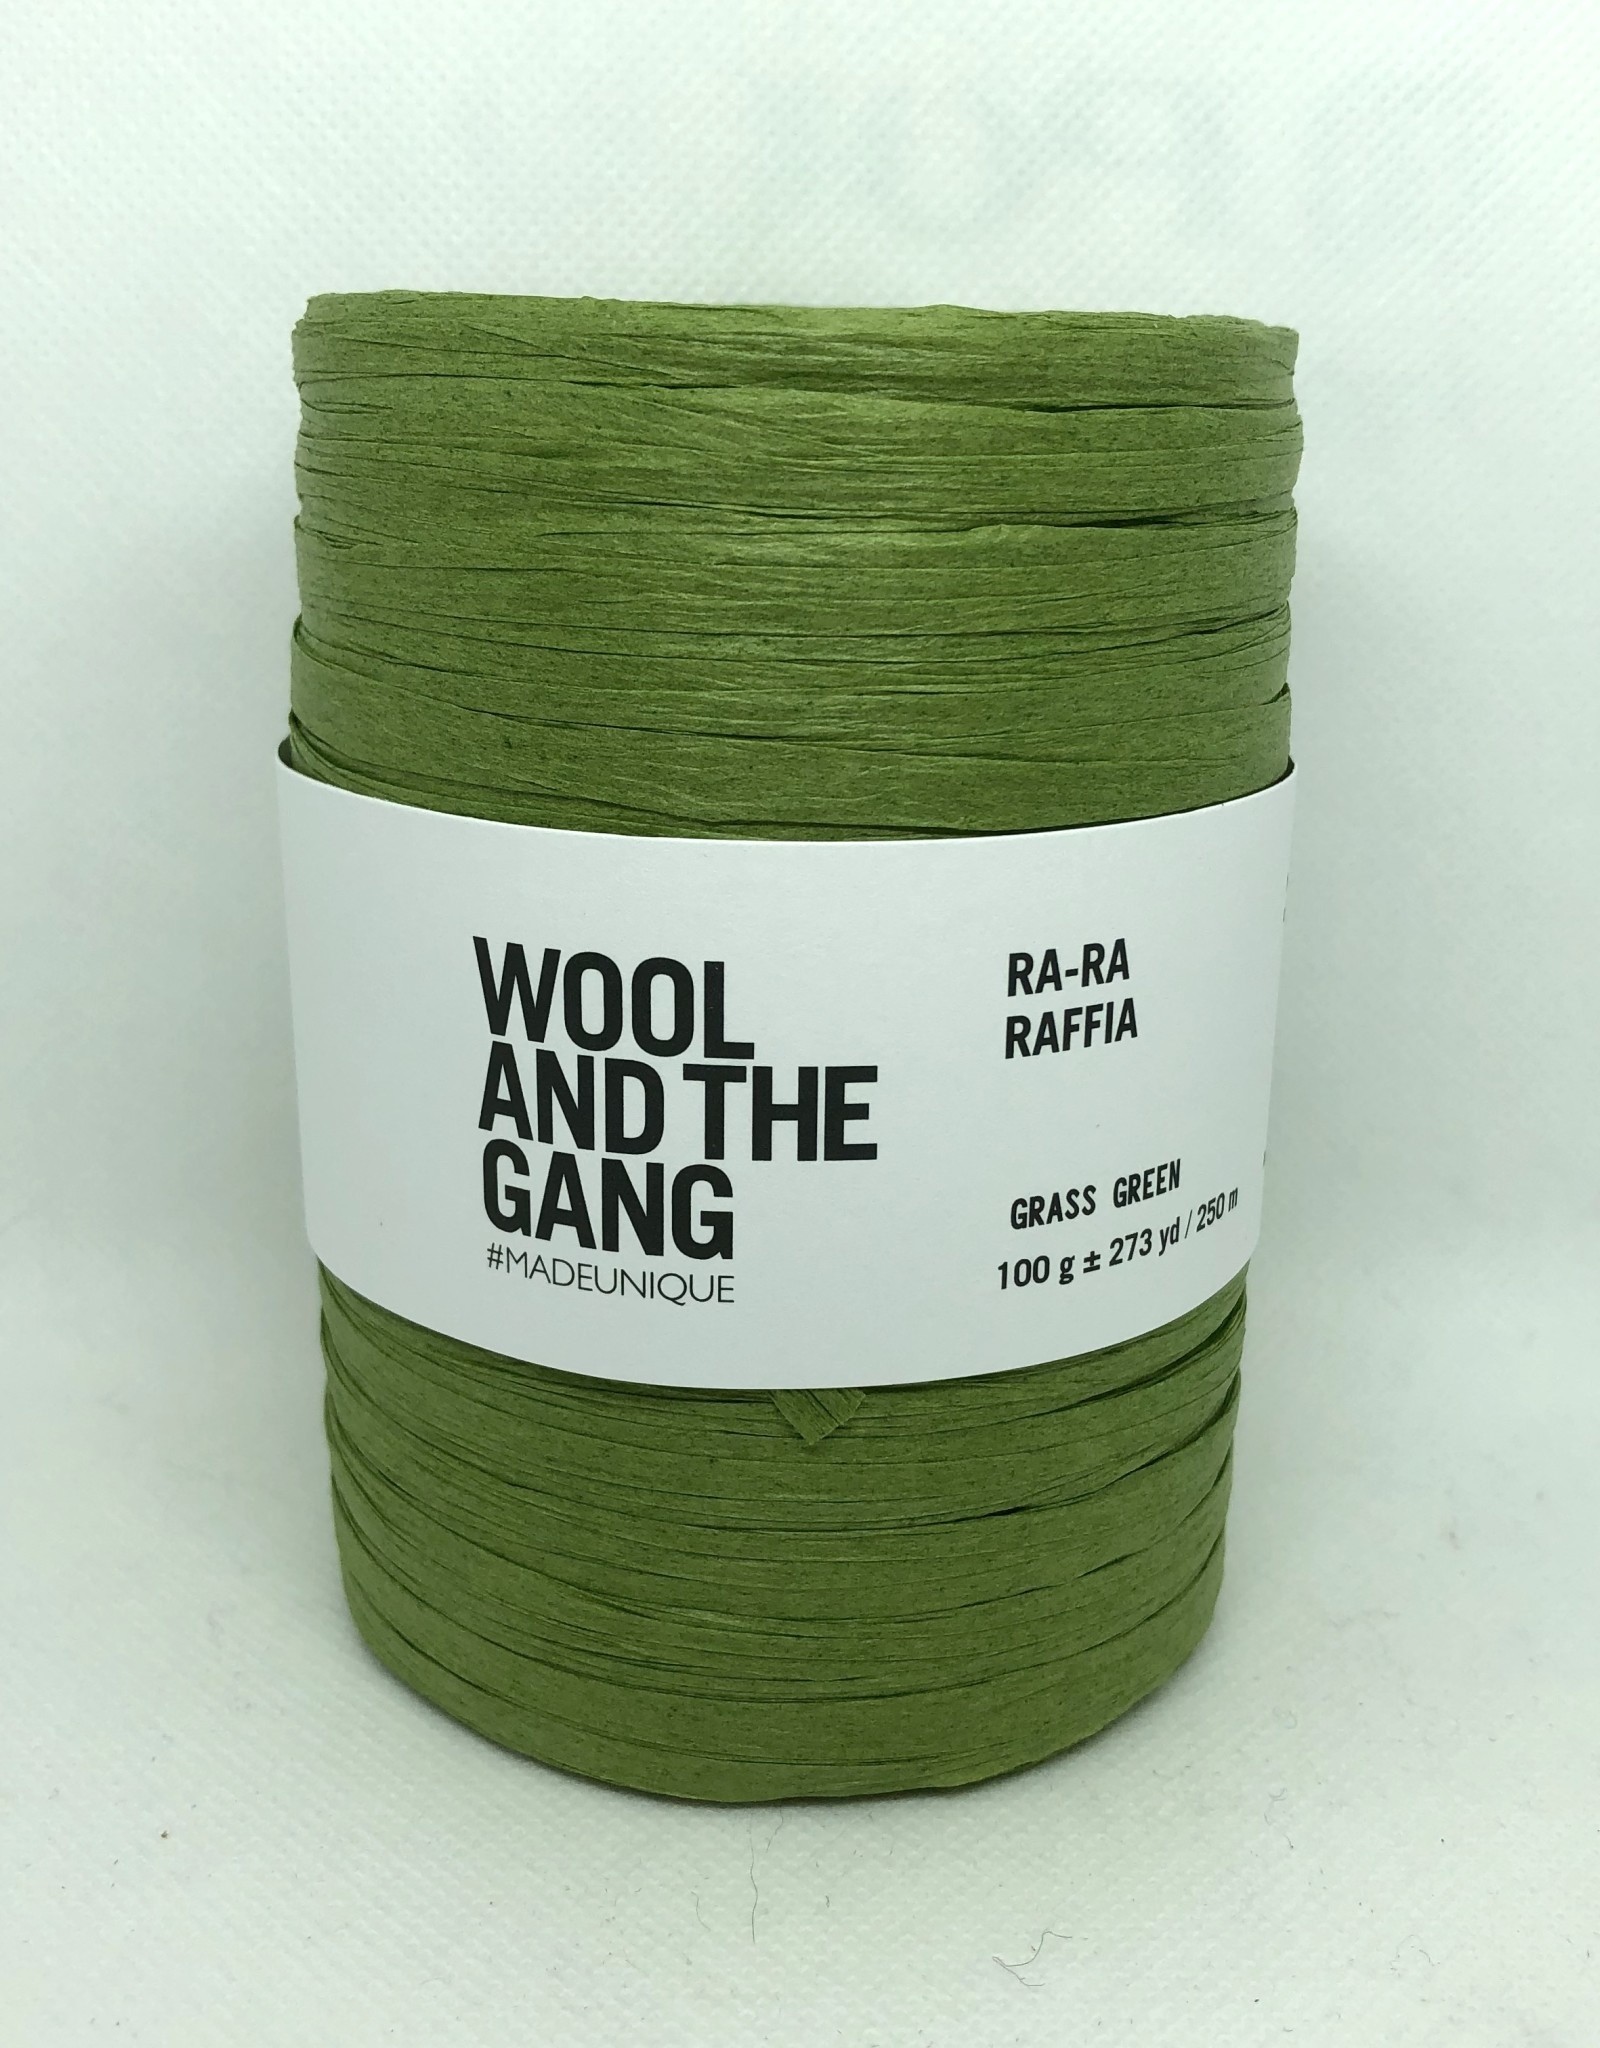 Wool and the Gang Ra-Ra-Raffia